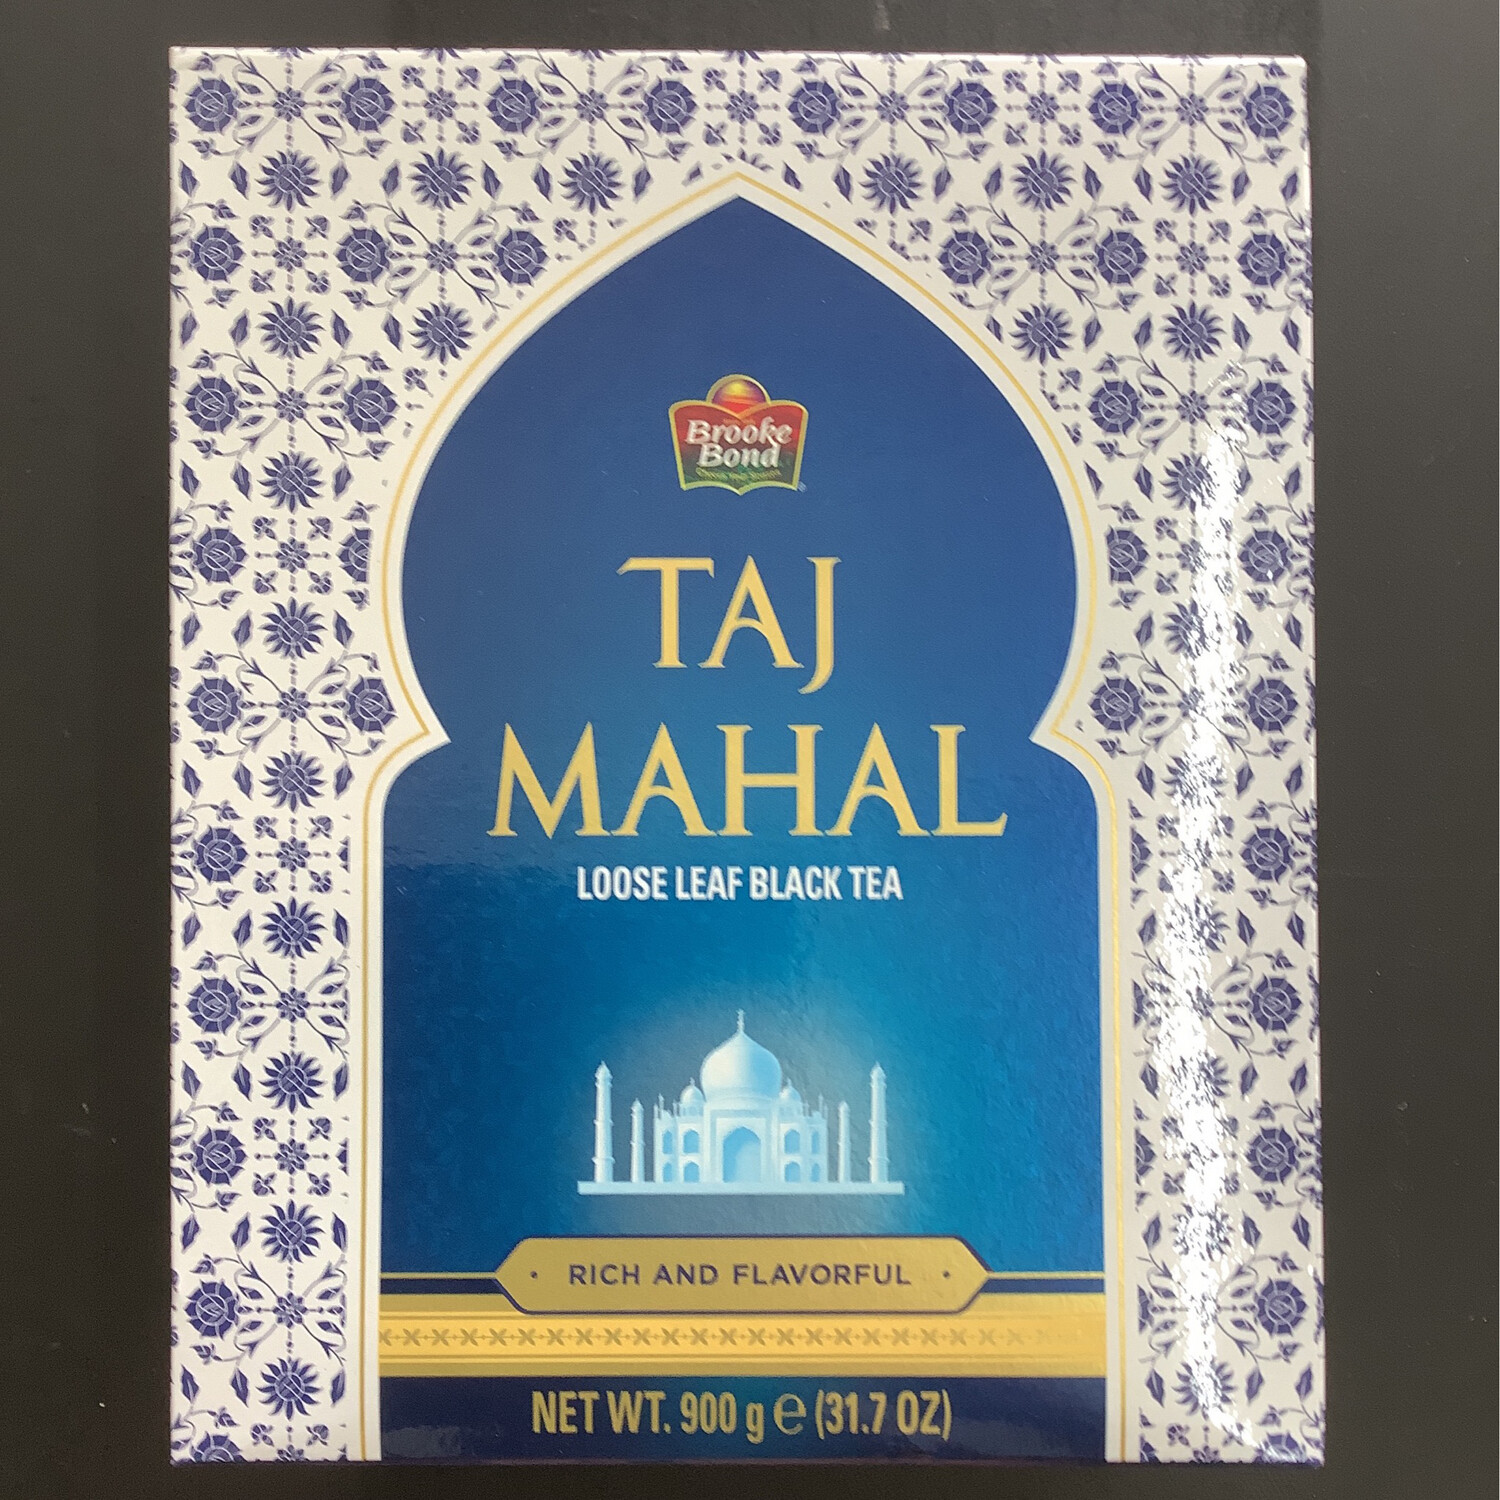 Brooke Bond Taj Mahal Loose Leaf Black Tea (Schwarzer Tee) 900g